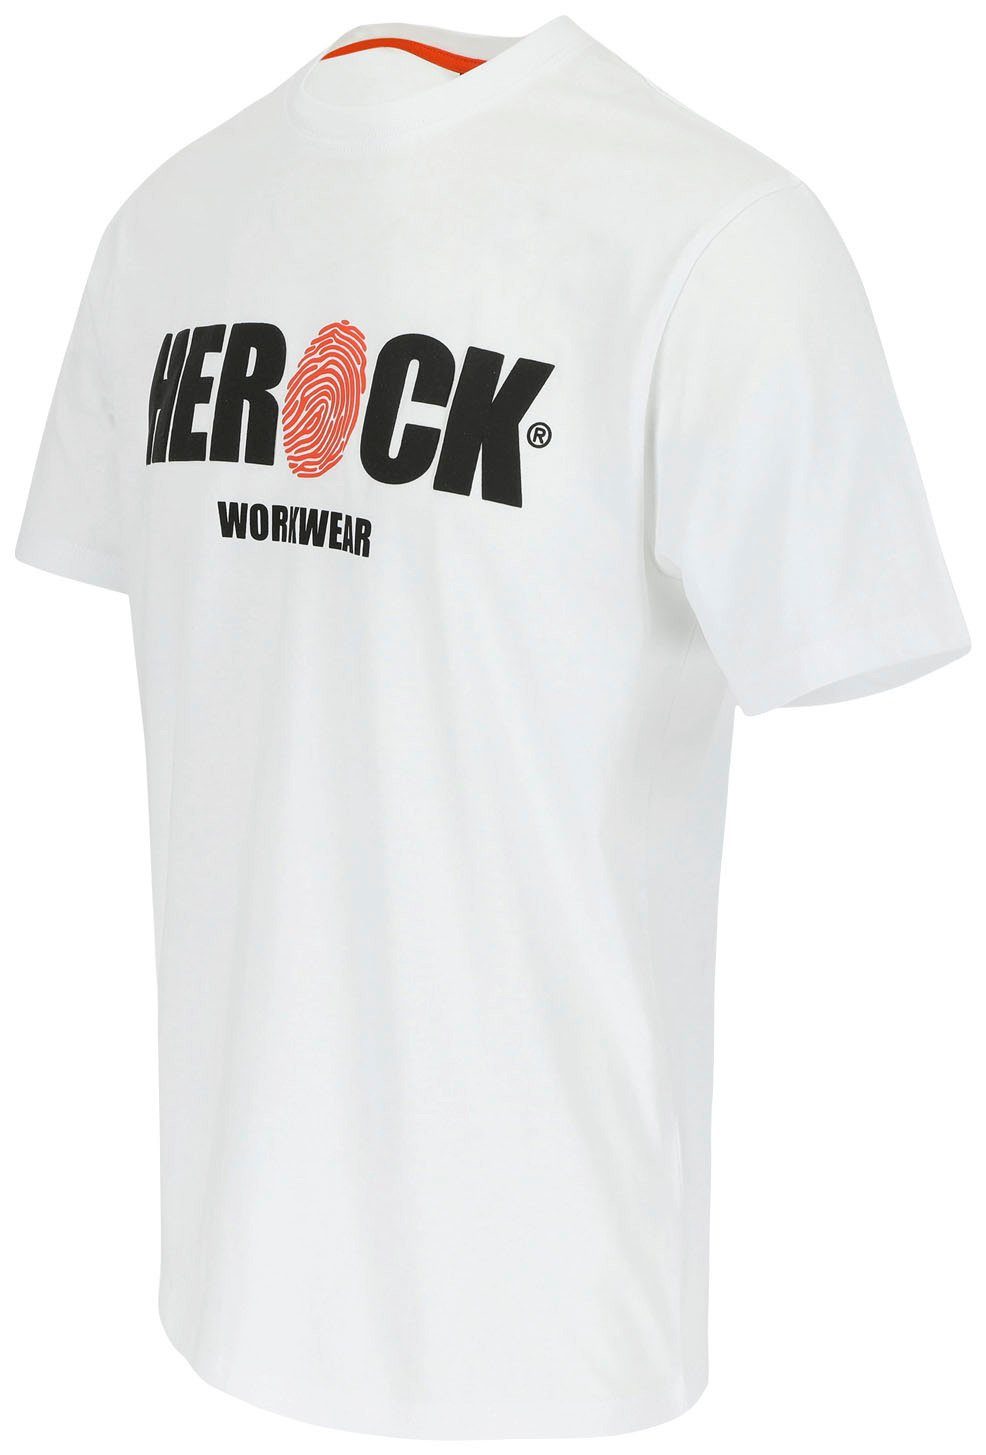 Herock T-Shirt ENI Baumwolle, Rundhals, Tragegefühl angenehmes mit Herock®-Aufdruck, weiß